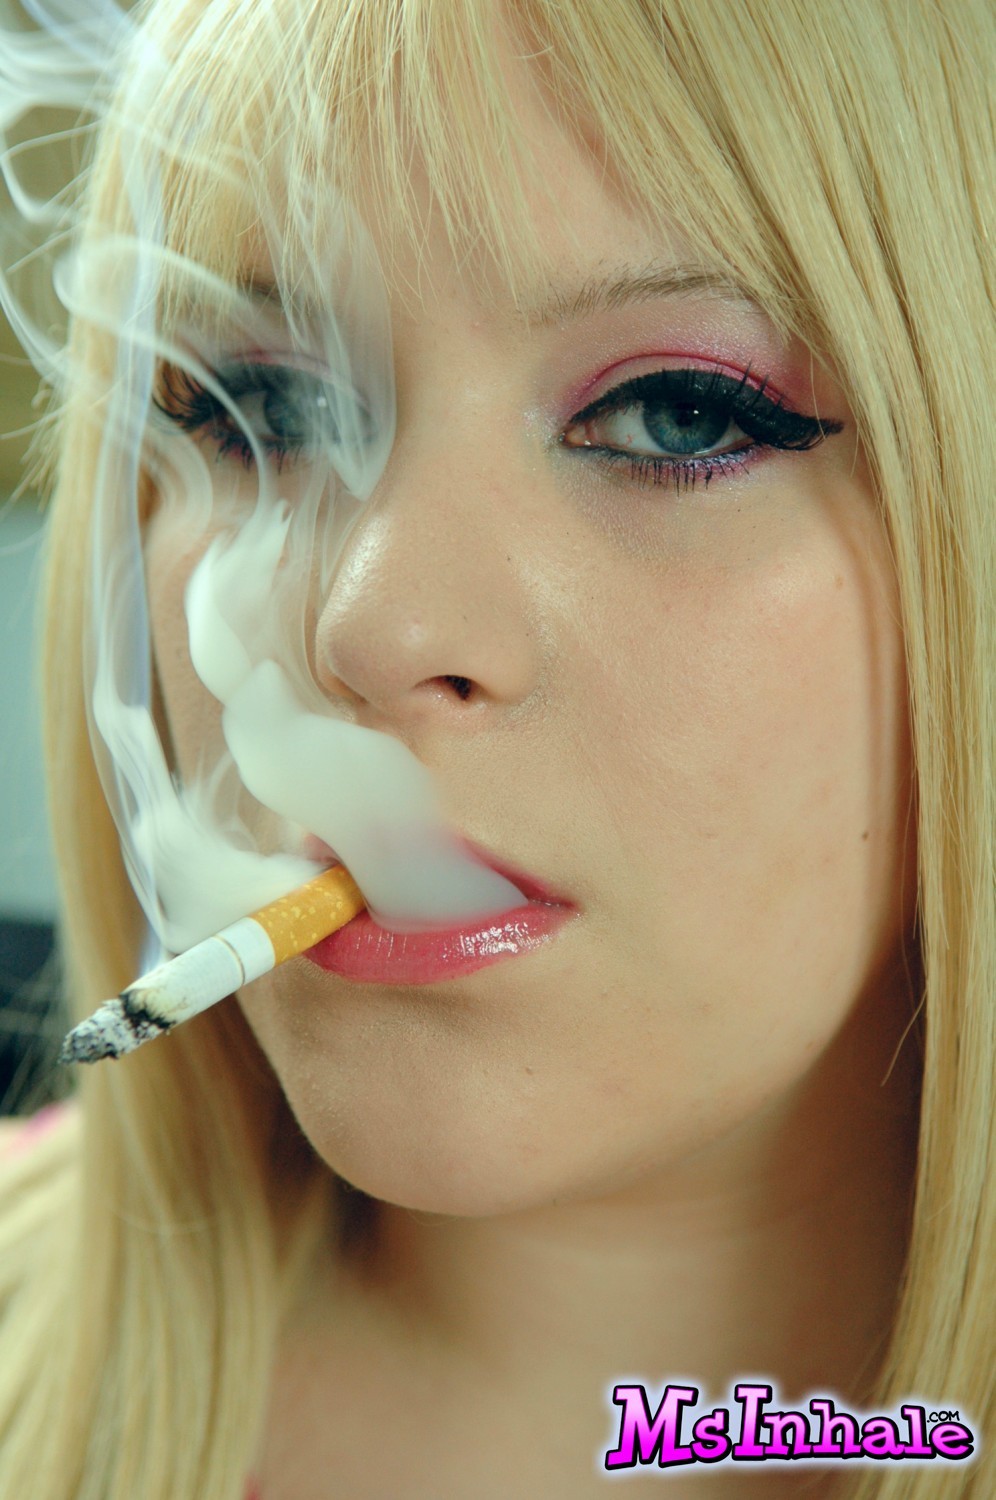 Mignonne salope blonde msinhale aime fumer des cigarettes pendant que vous regardez.
 #70261770